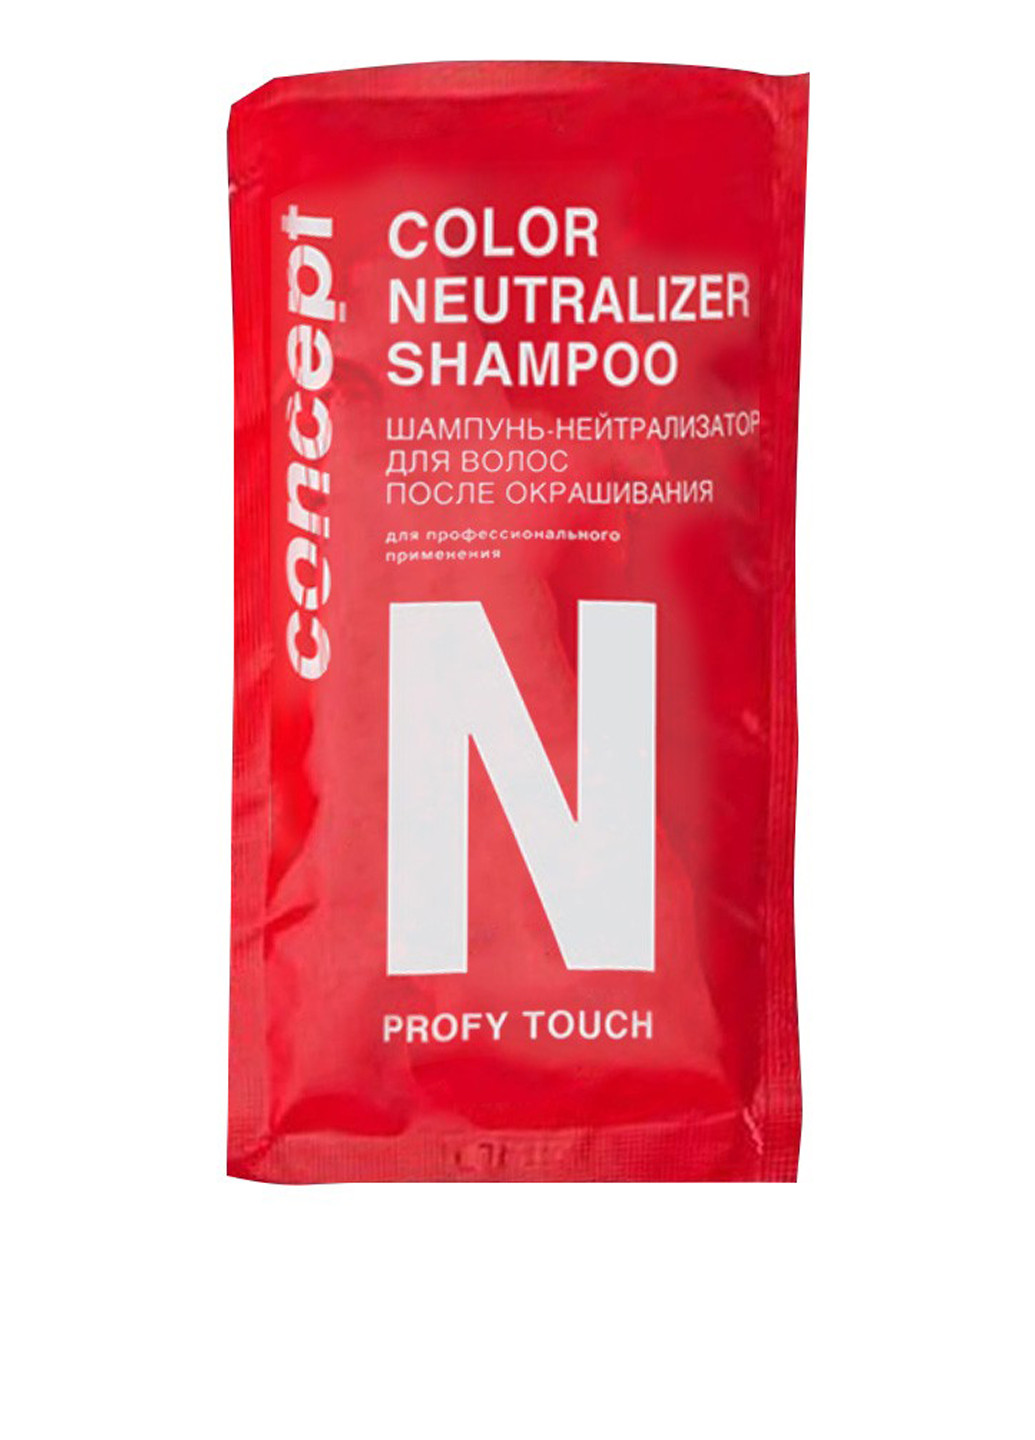 Шампунь-нейтрализатор для волос после окрашивания Profy Touch (пробник), 15 мл Concept (76060680)